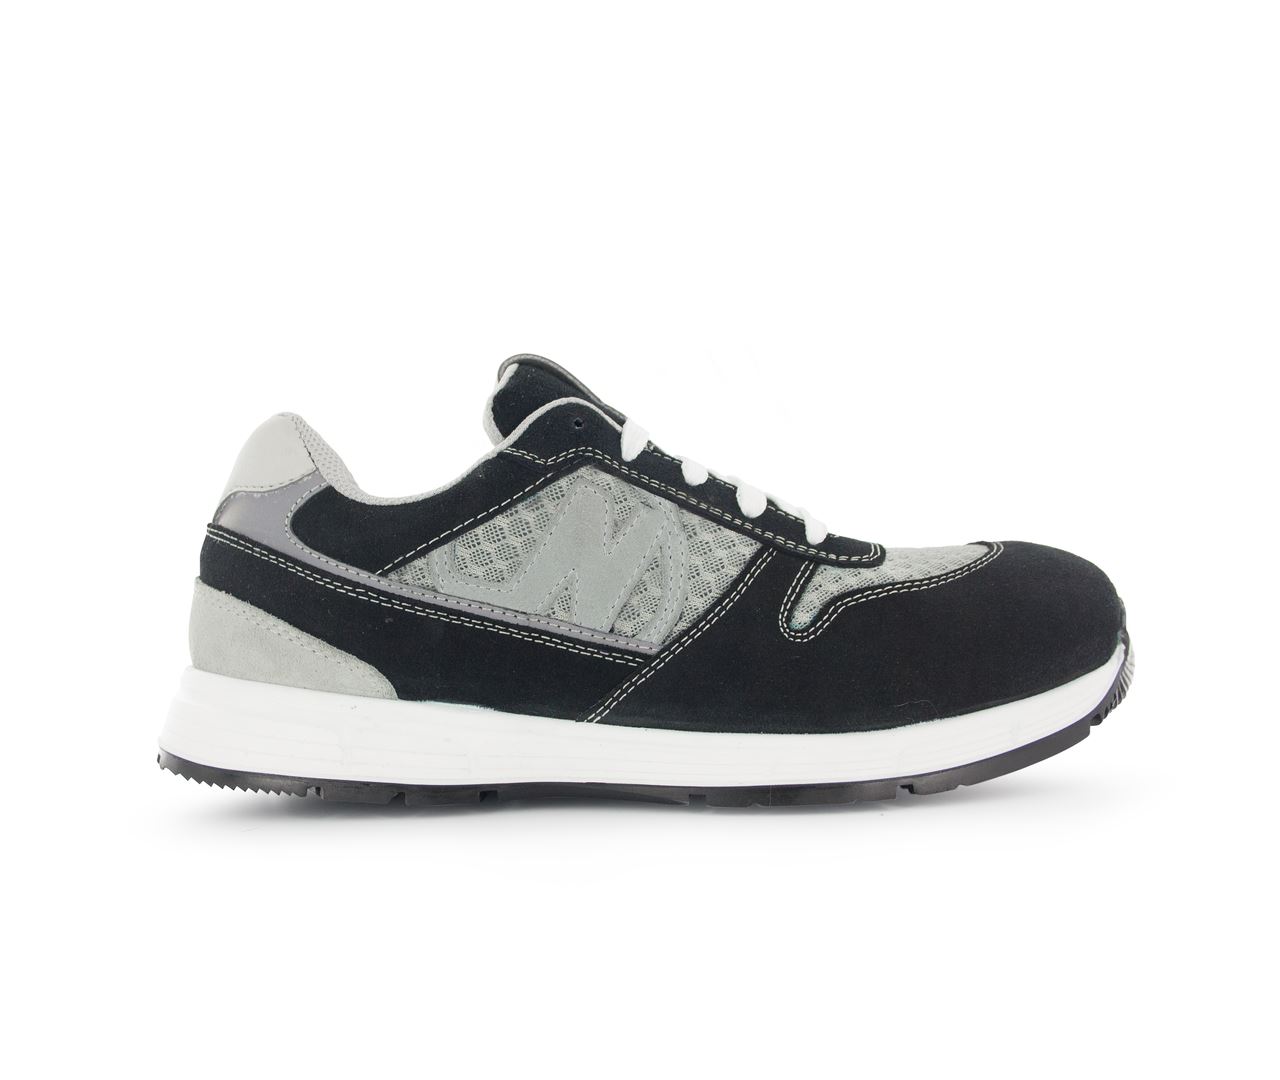 Chaussure de sécurité noir/gris Run Soft T.45 - Nord'Ways - RUN000245000NOGR